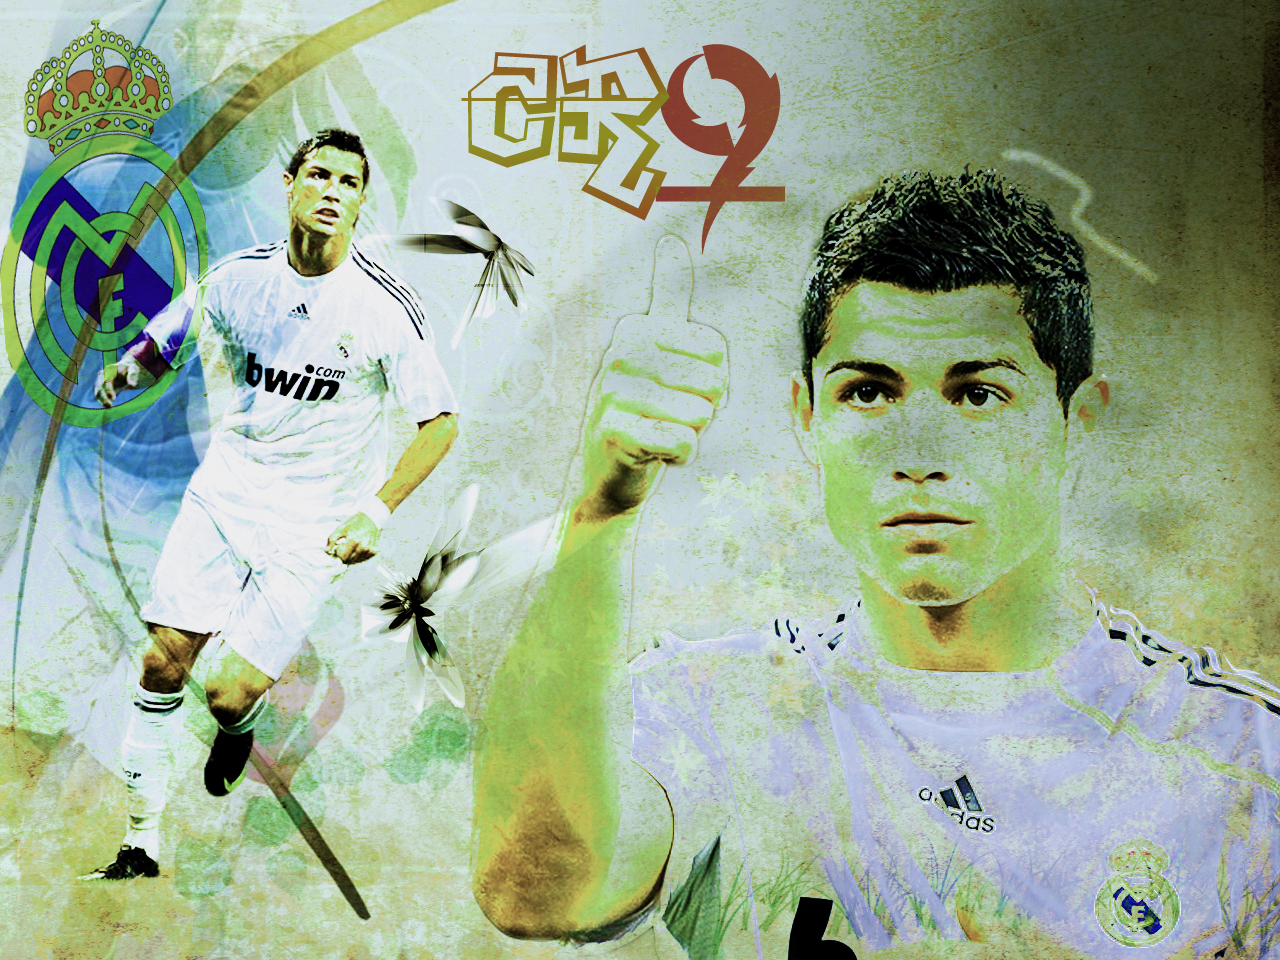 Previous Image C Ronaldo Size X Pixels Date